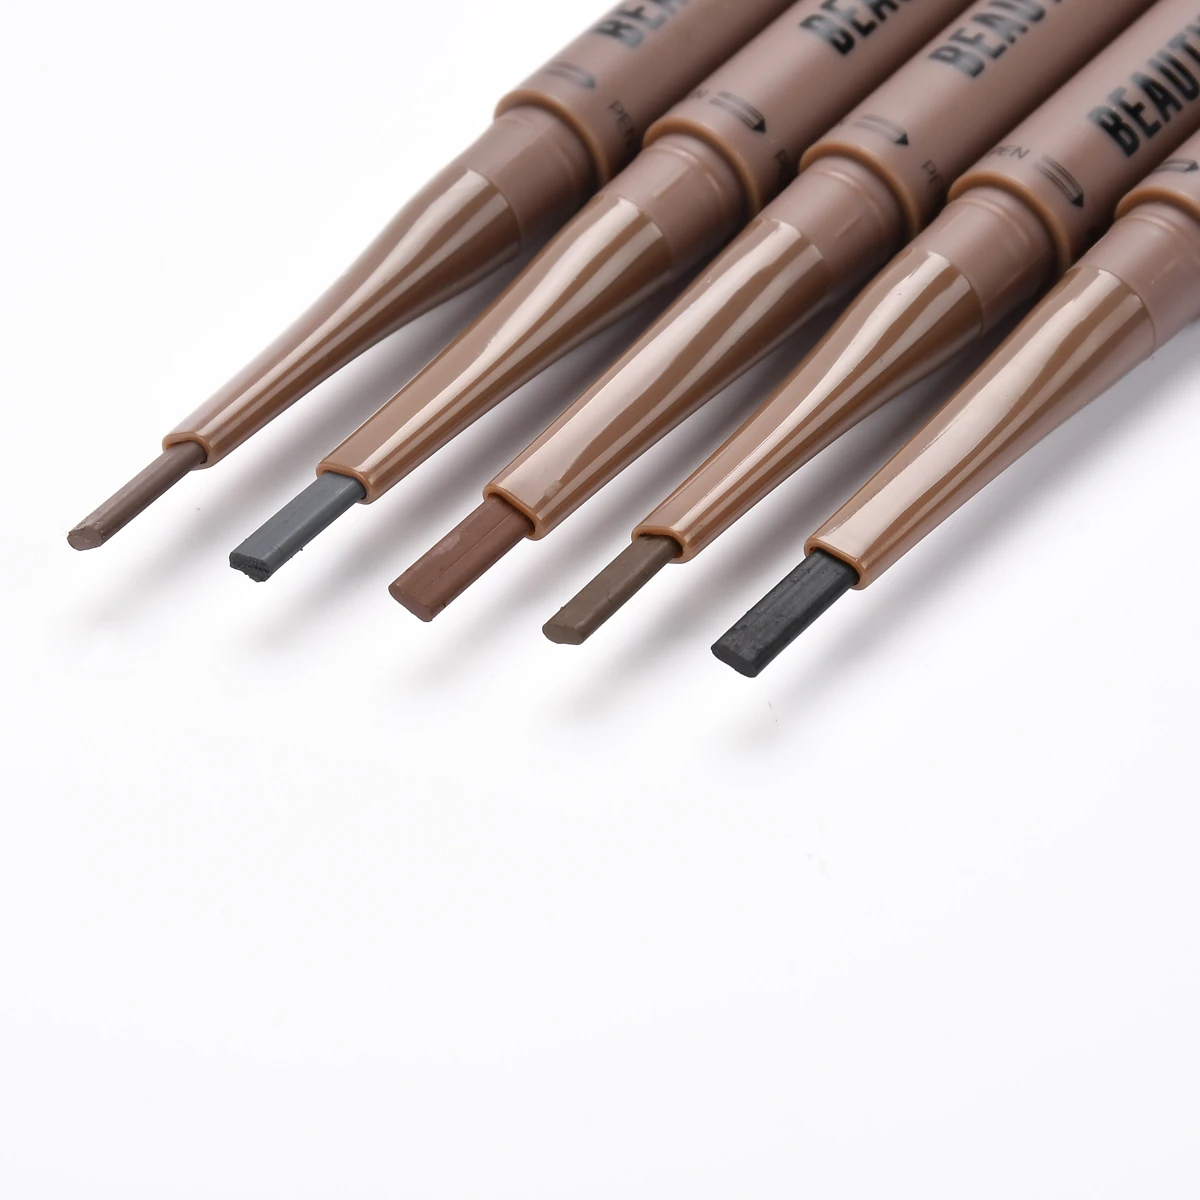 BEAUTYBIGBANG карандаш для бровей с двойной головкой черный коричневый карандаш для бровей Sobrancelha Maquillaje maquiagem Профессиональный полный